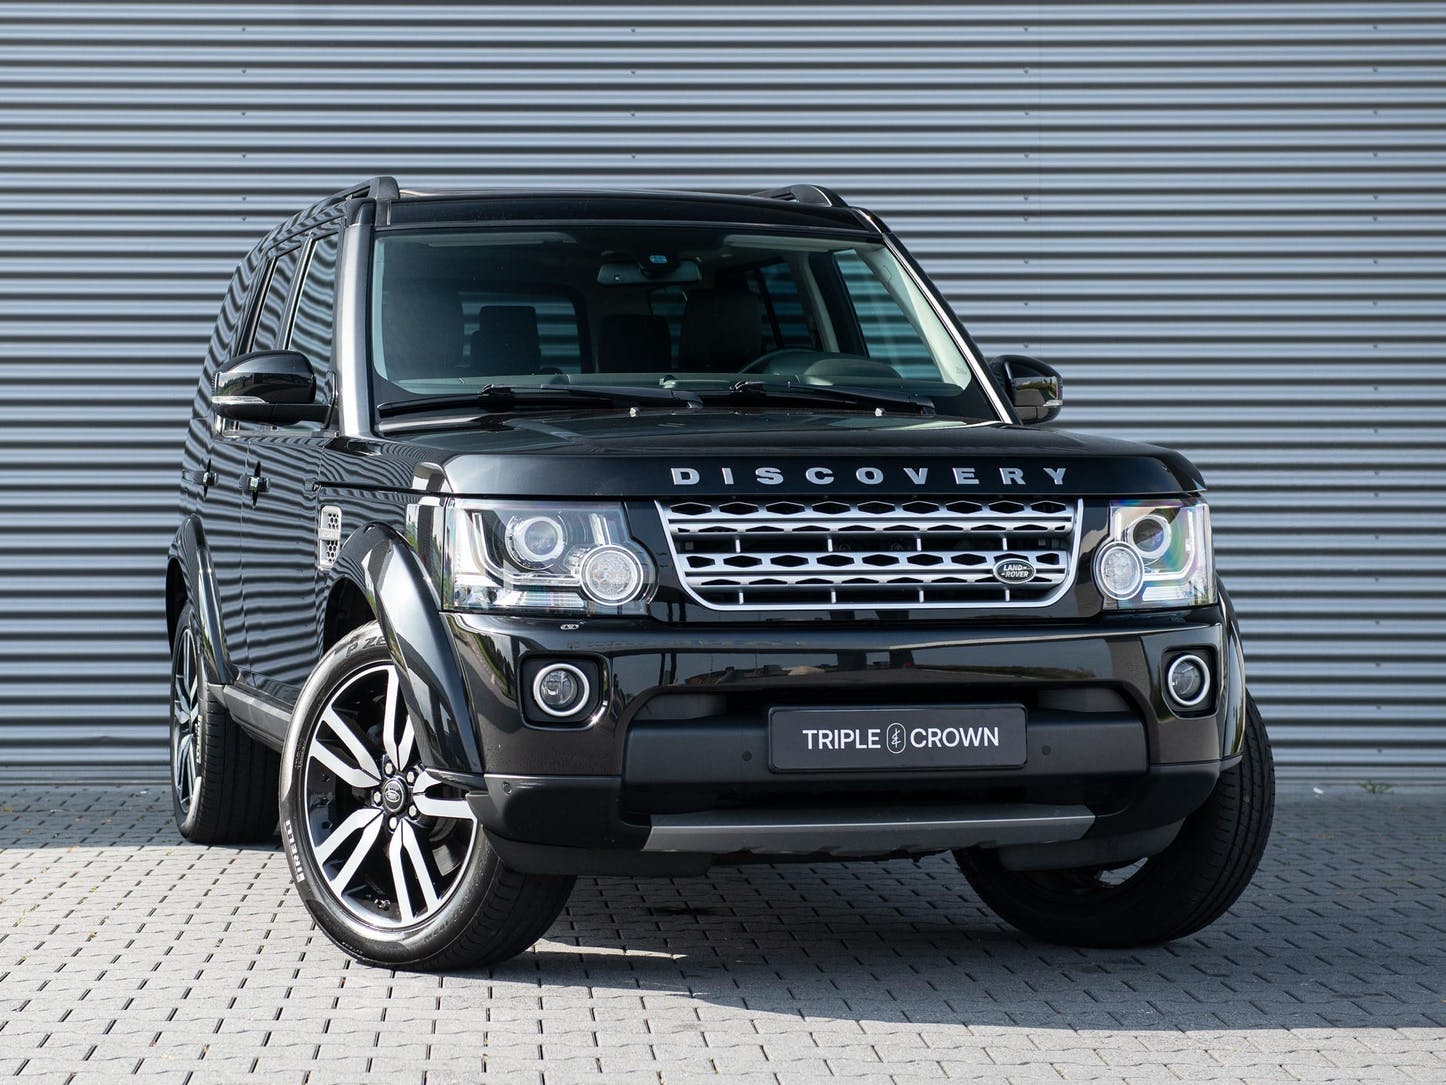 Proberen pit Nodig uit Droom-occasion: tweedehands Land Rover Discovery met scherpe prijs